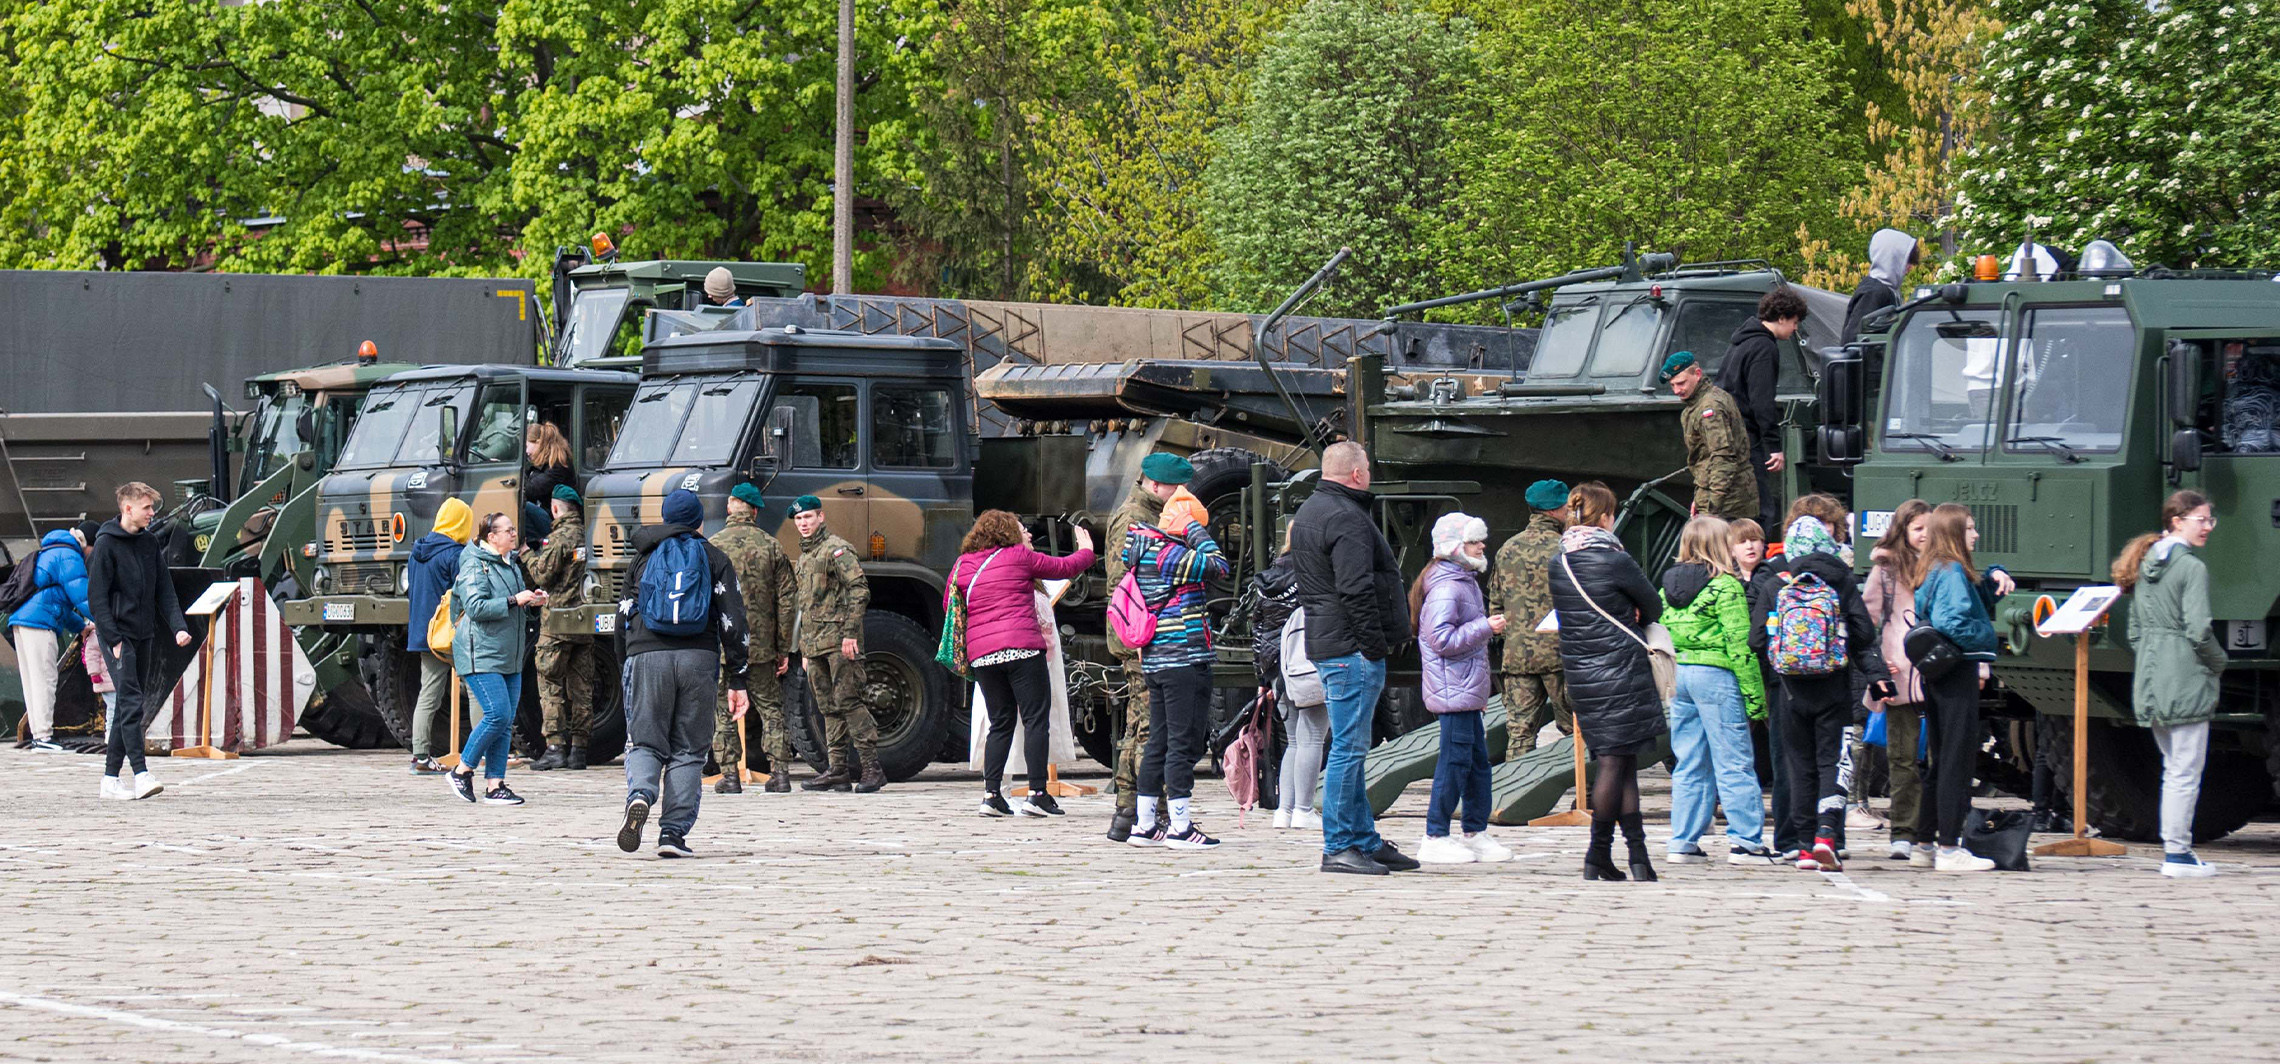 Inowrocław - Dziś można obejrzeć wojsko od środka